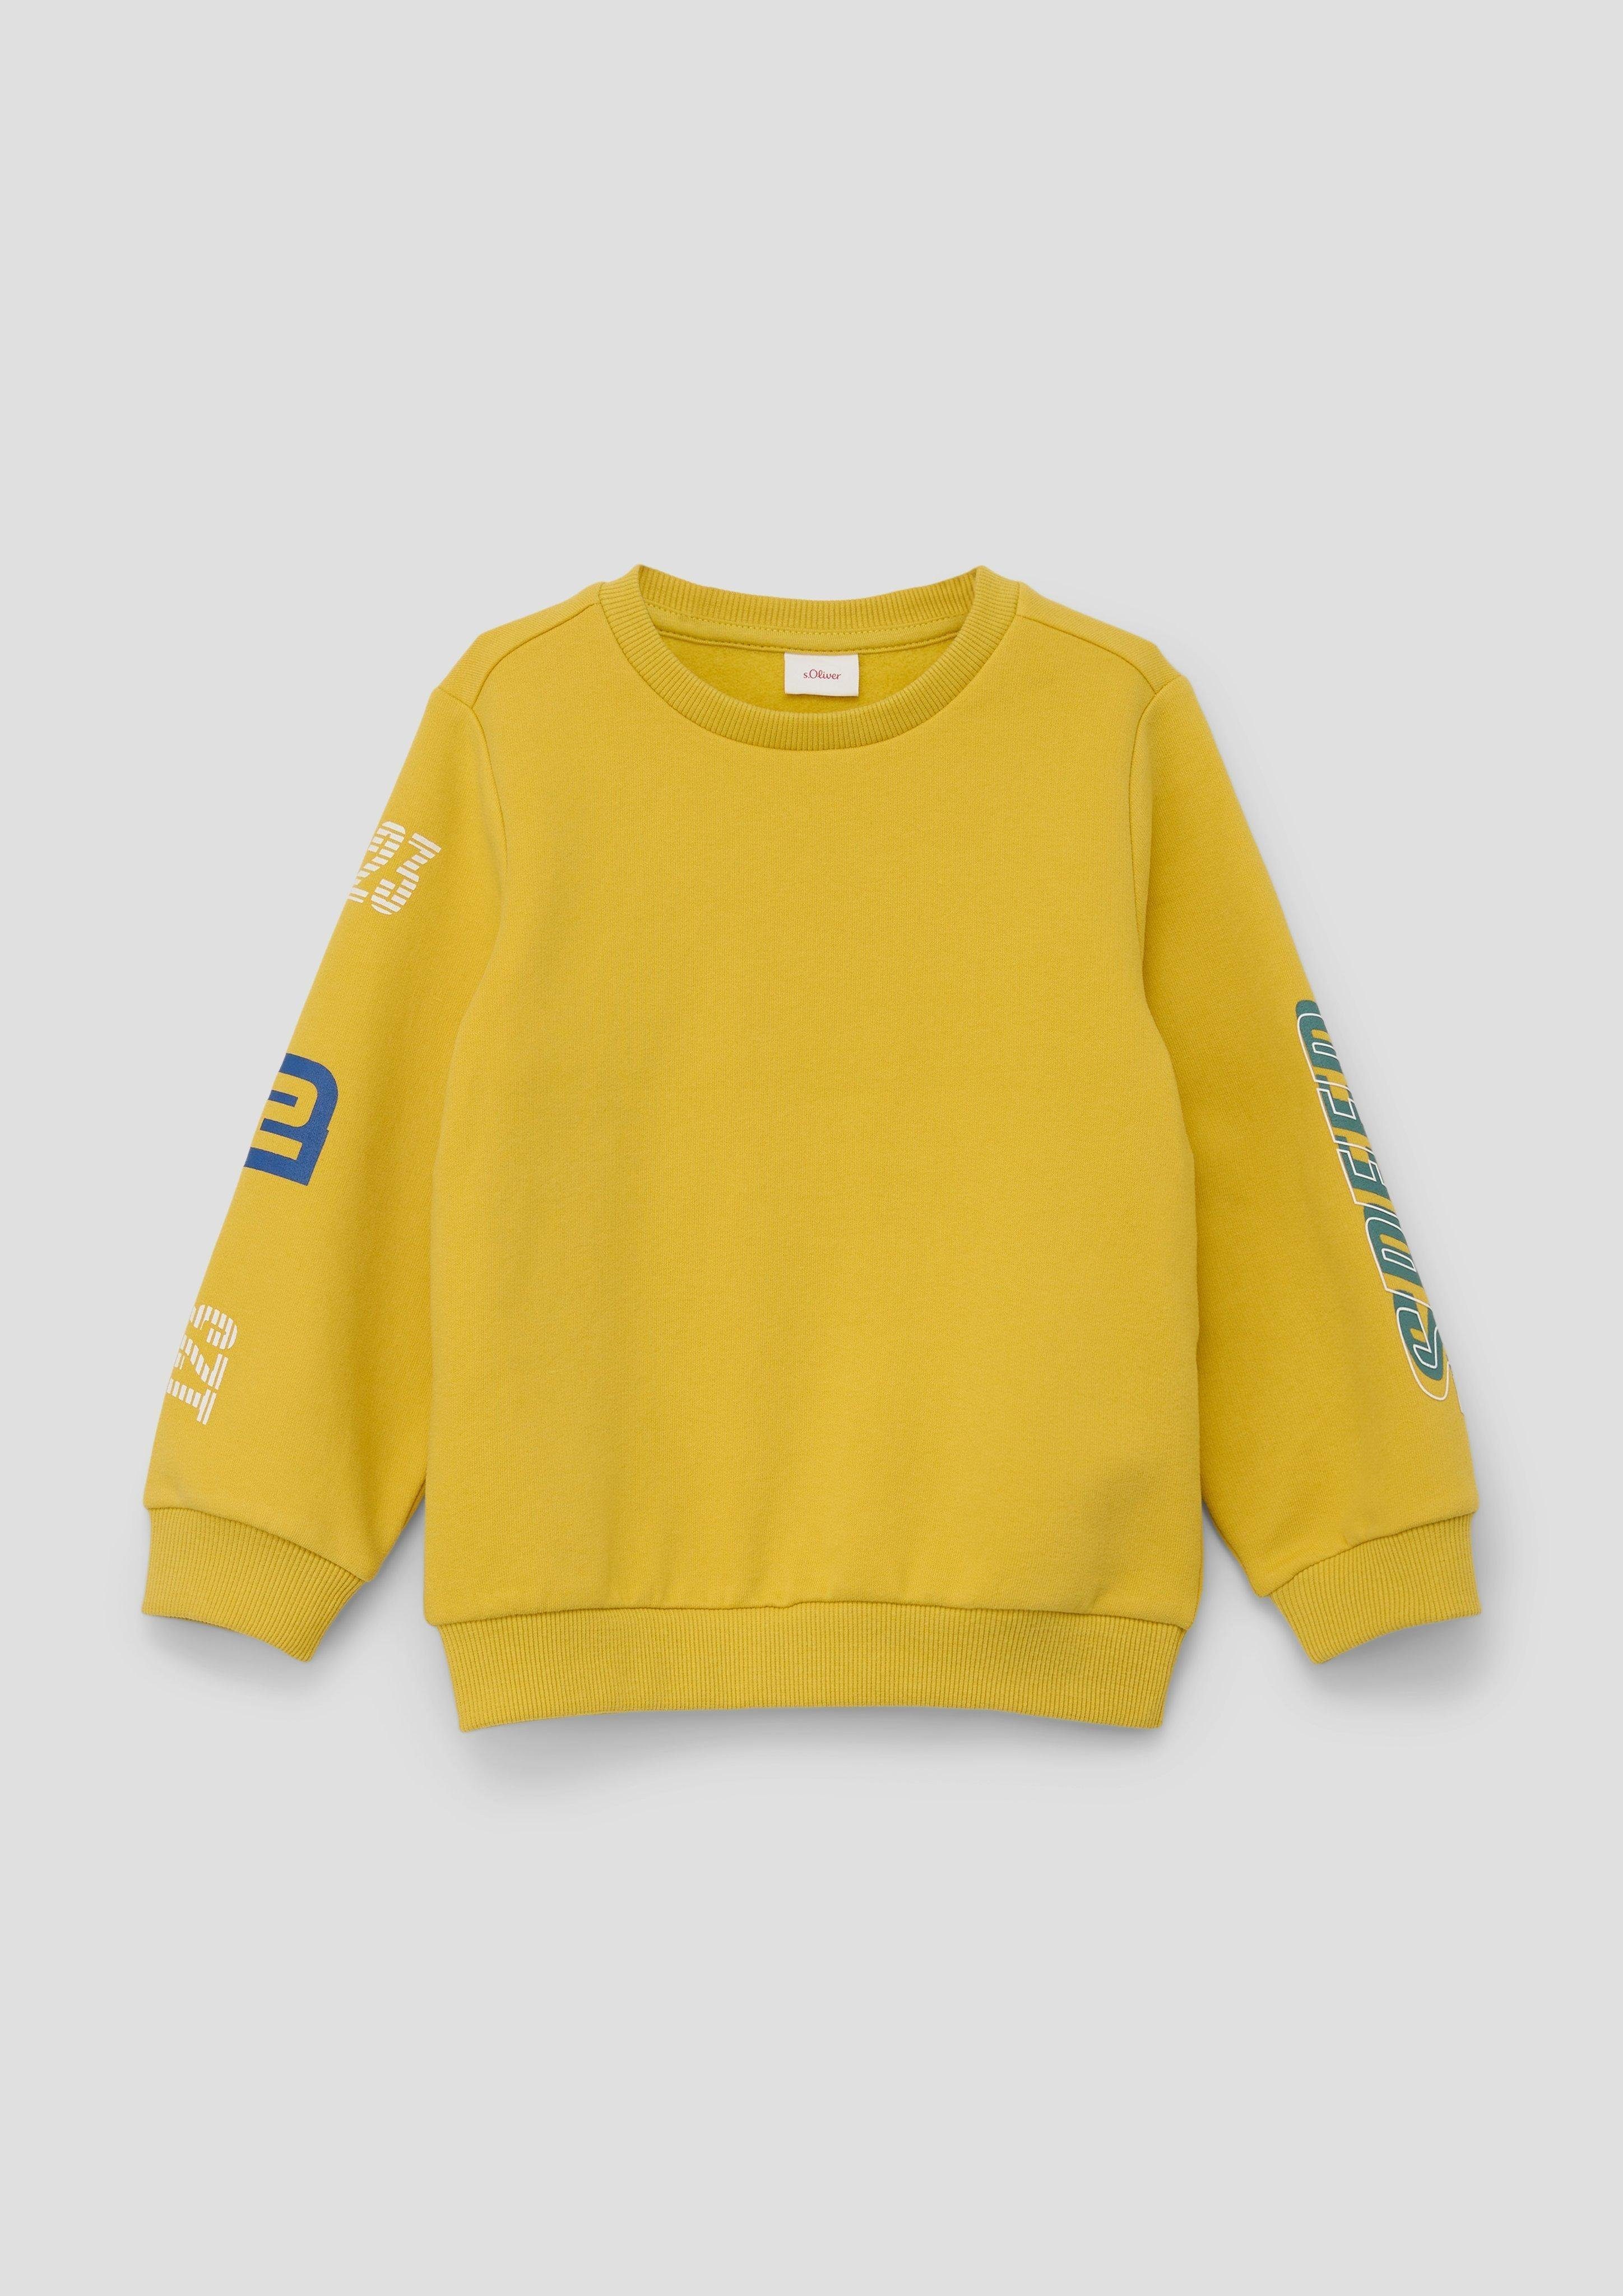 Offizieller Shop Sweatshirt gelb Baumwollmix aus s.Oliver Sweatshirt